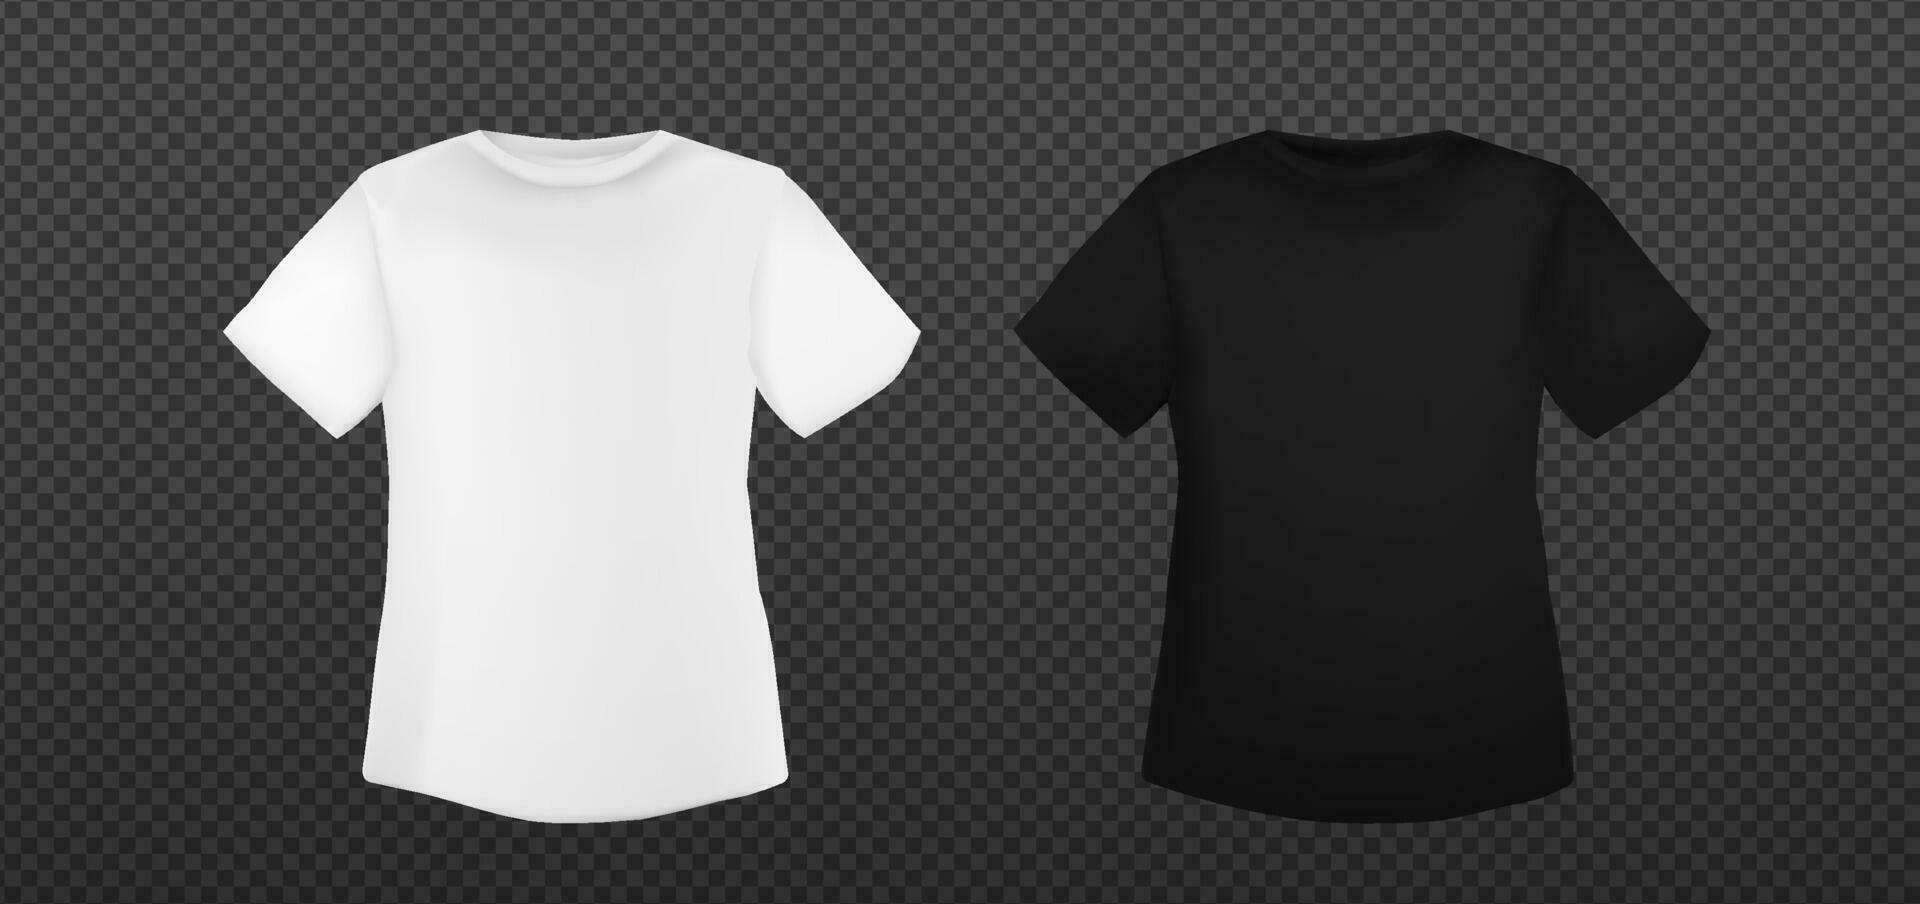 bianca e nero oversize maglietta modello. t camicia modello vuoto vettore